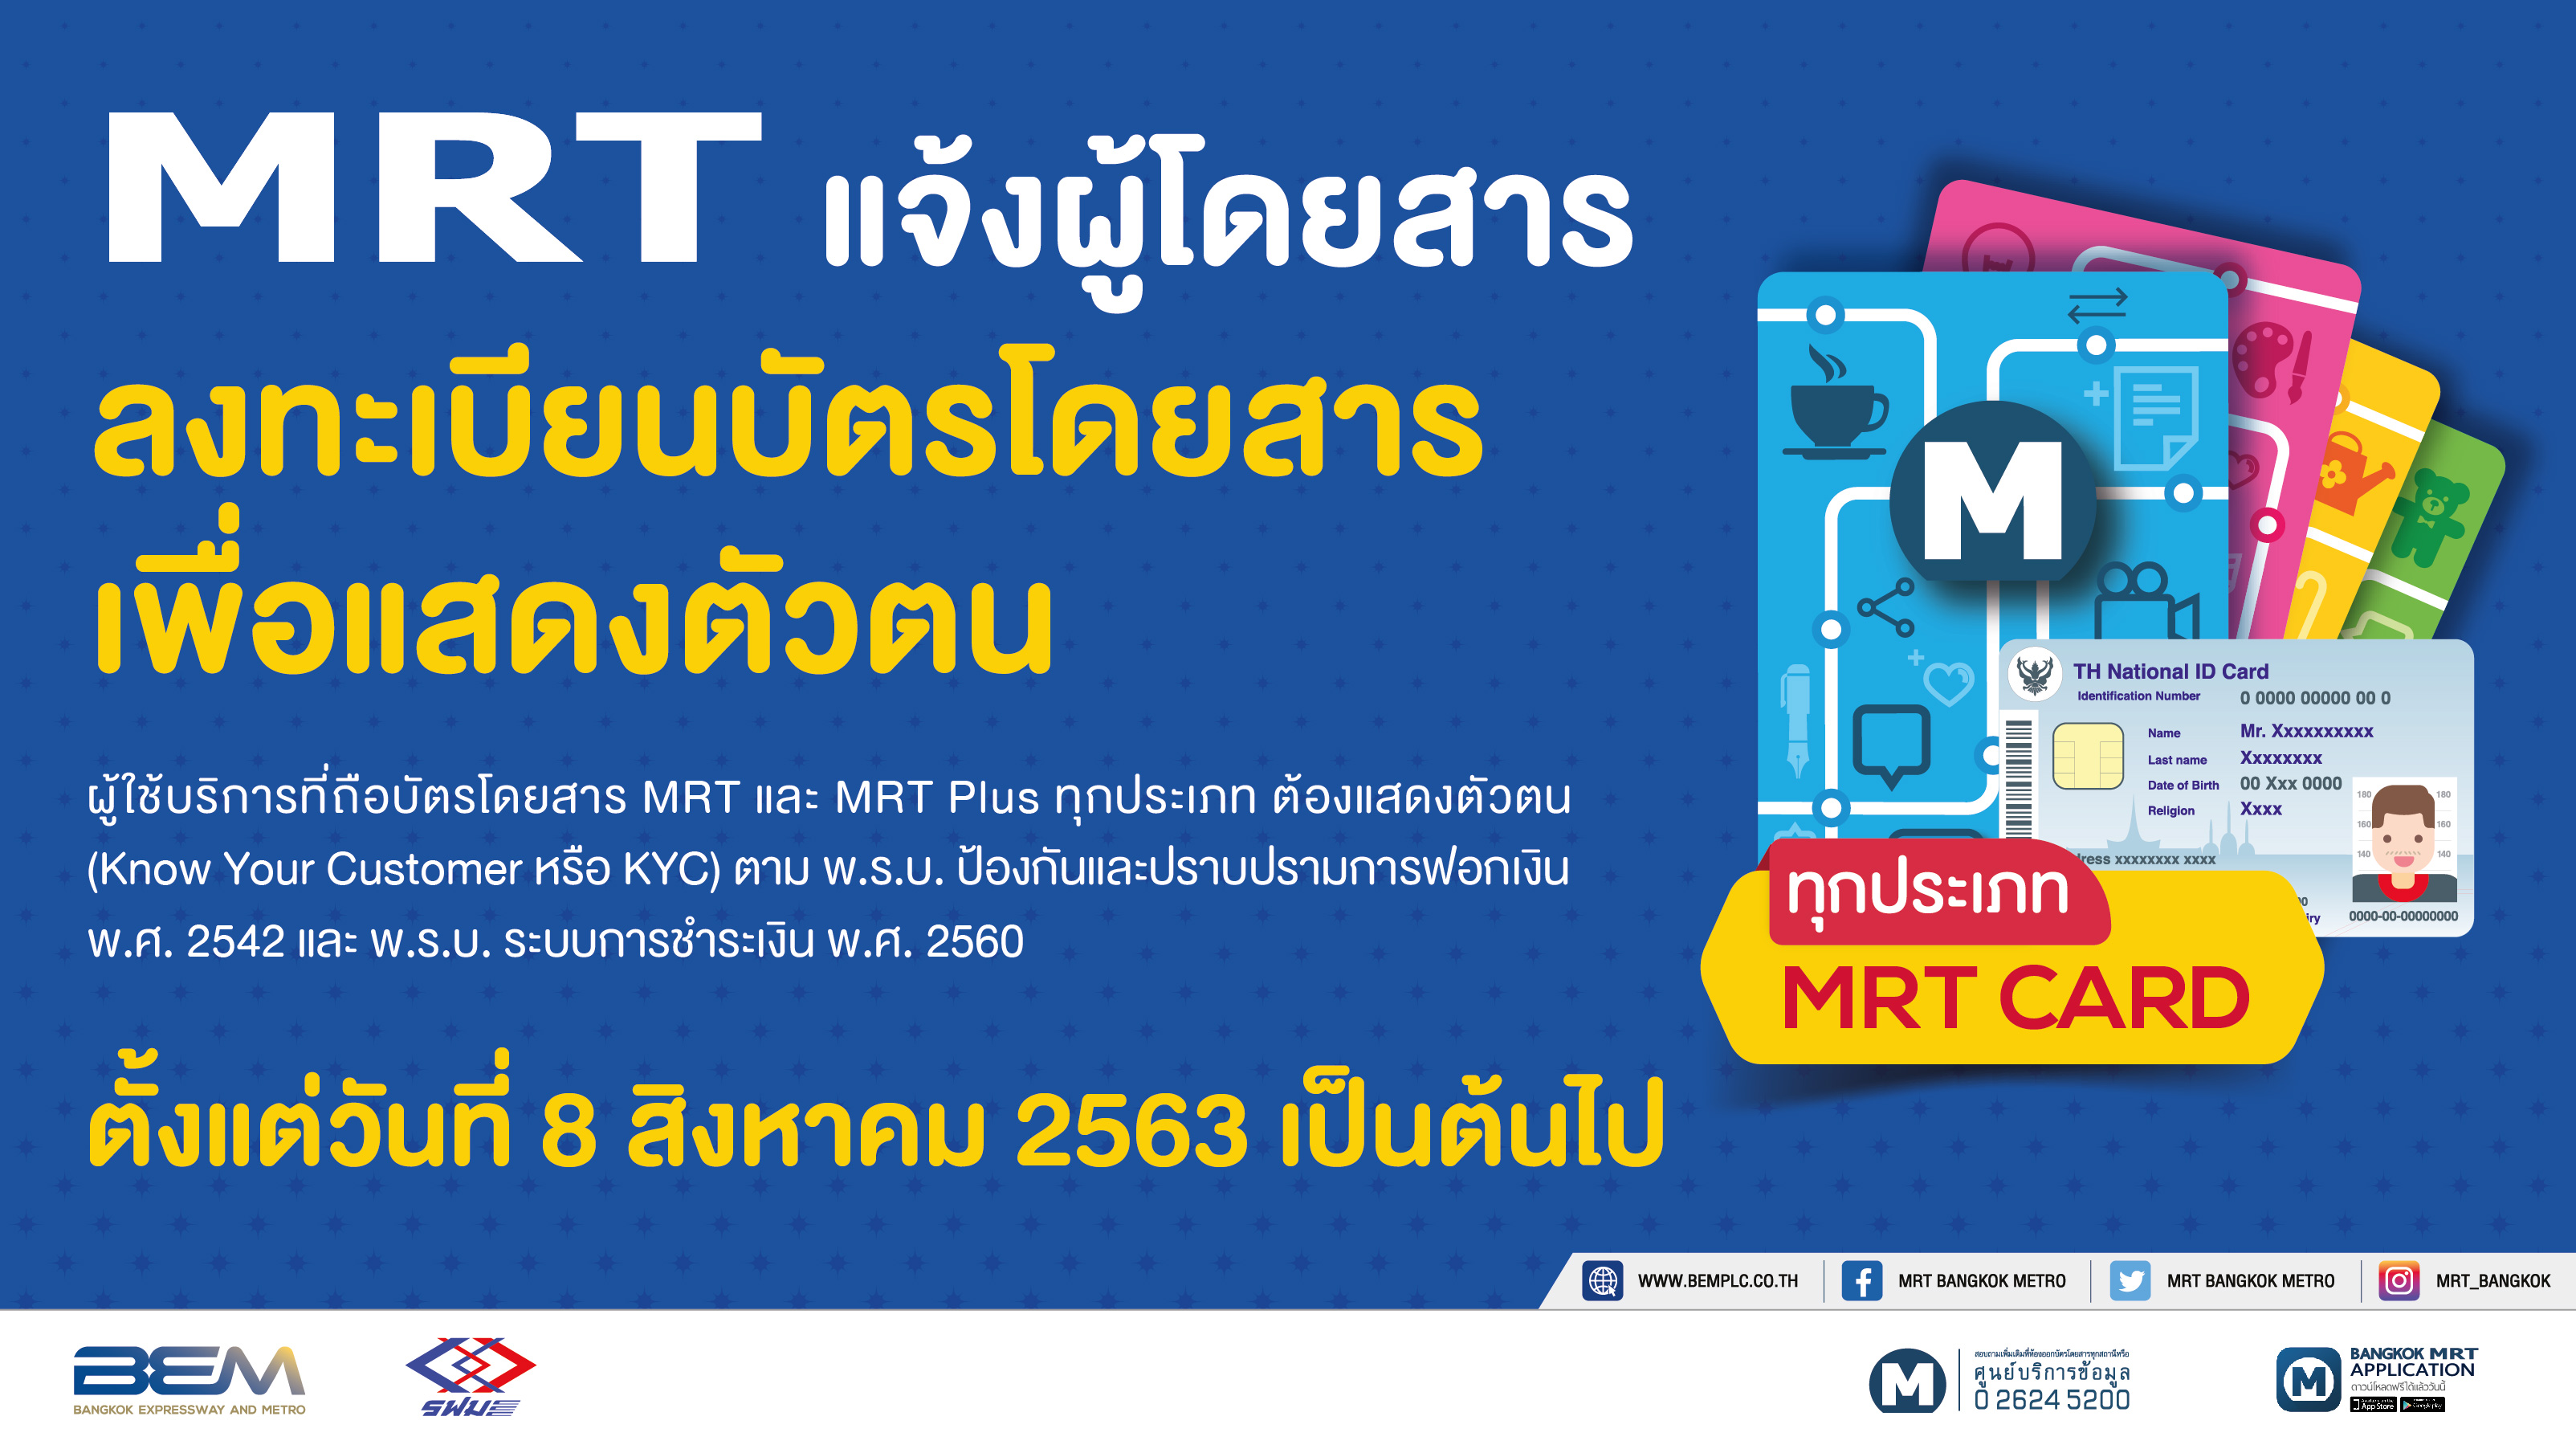 BEM แจ้งให้ผู้โดยสารลงทะเบียนบัตรโดยสาร MRT เพื่อแสดงตัวตน เริ่ม 8 สิงหาคมนี้